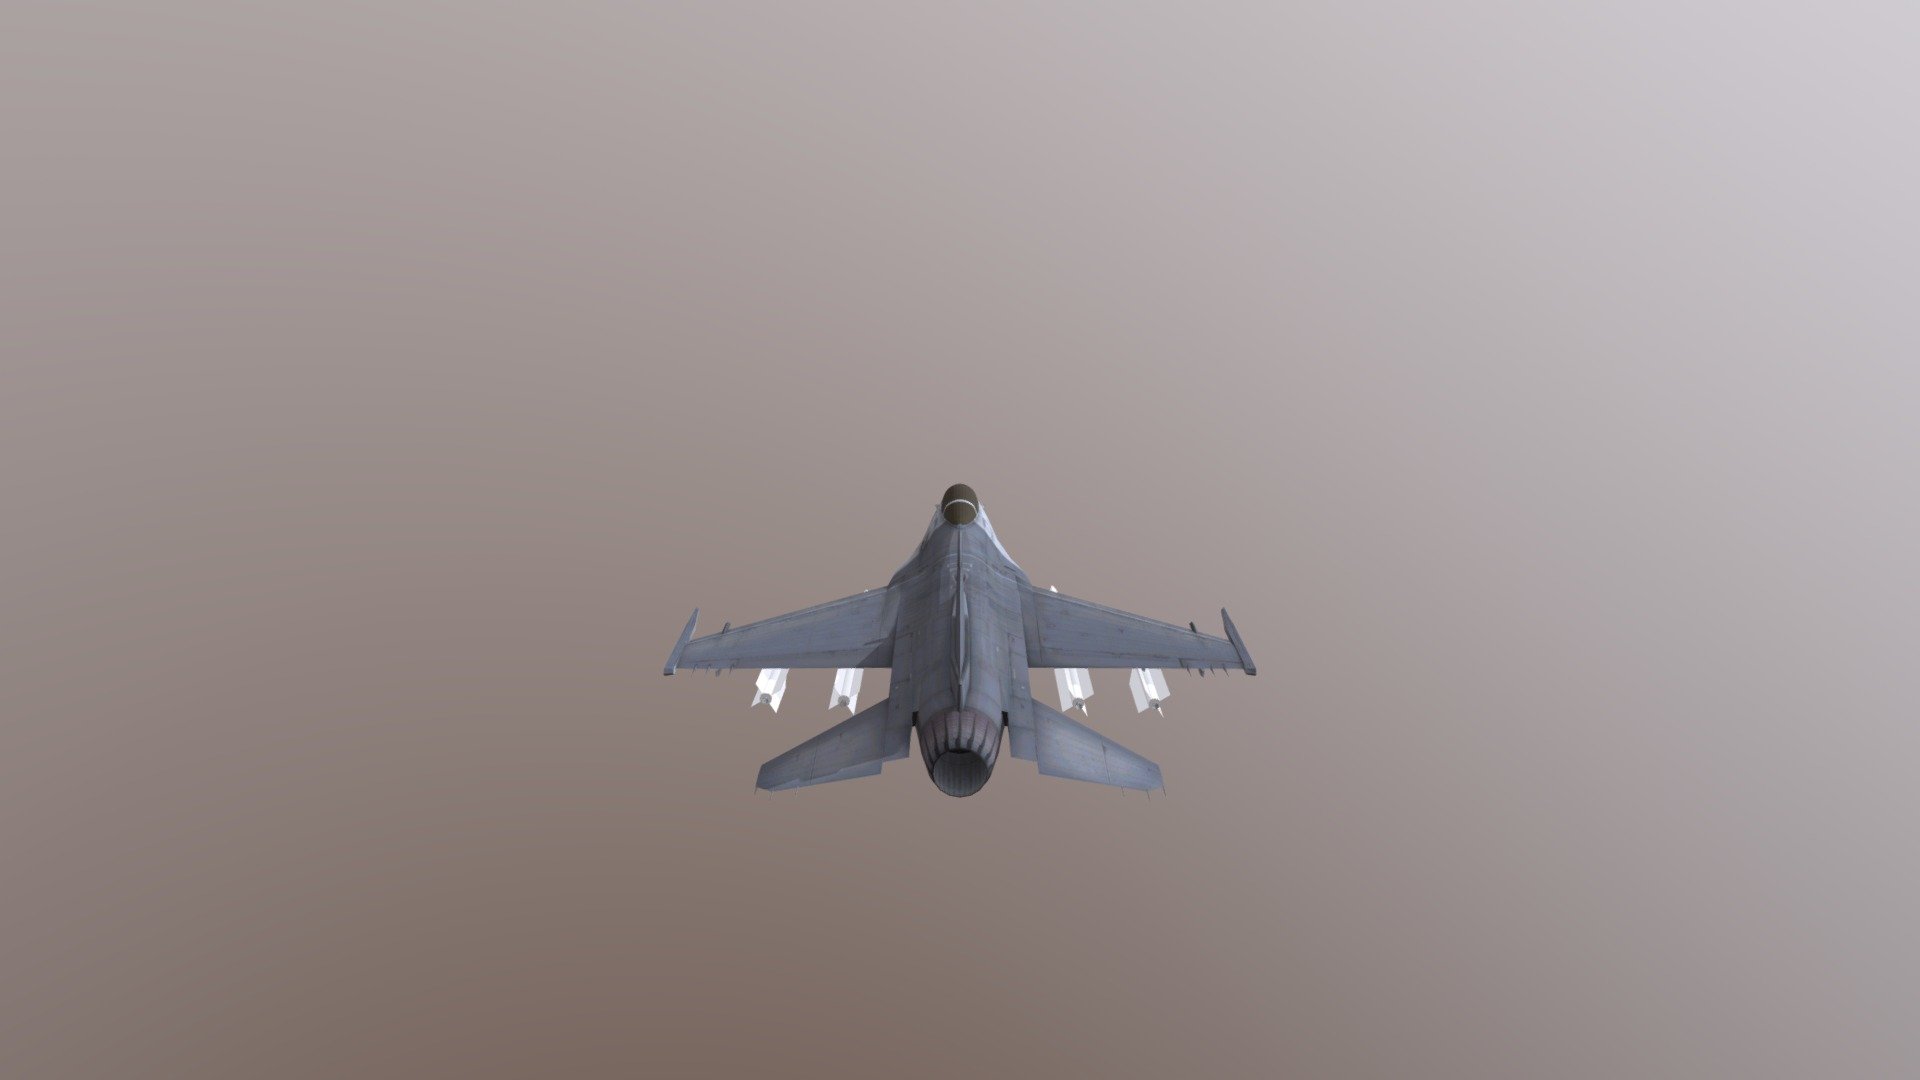 Modelo de F-16 complementado con misiles diseñados por mi - F-16 - 3D model by lilkremit 3d model